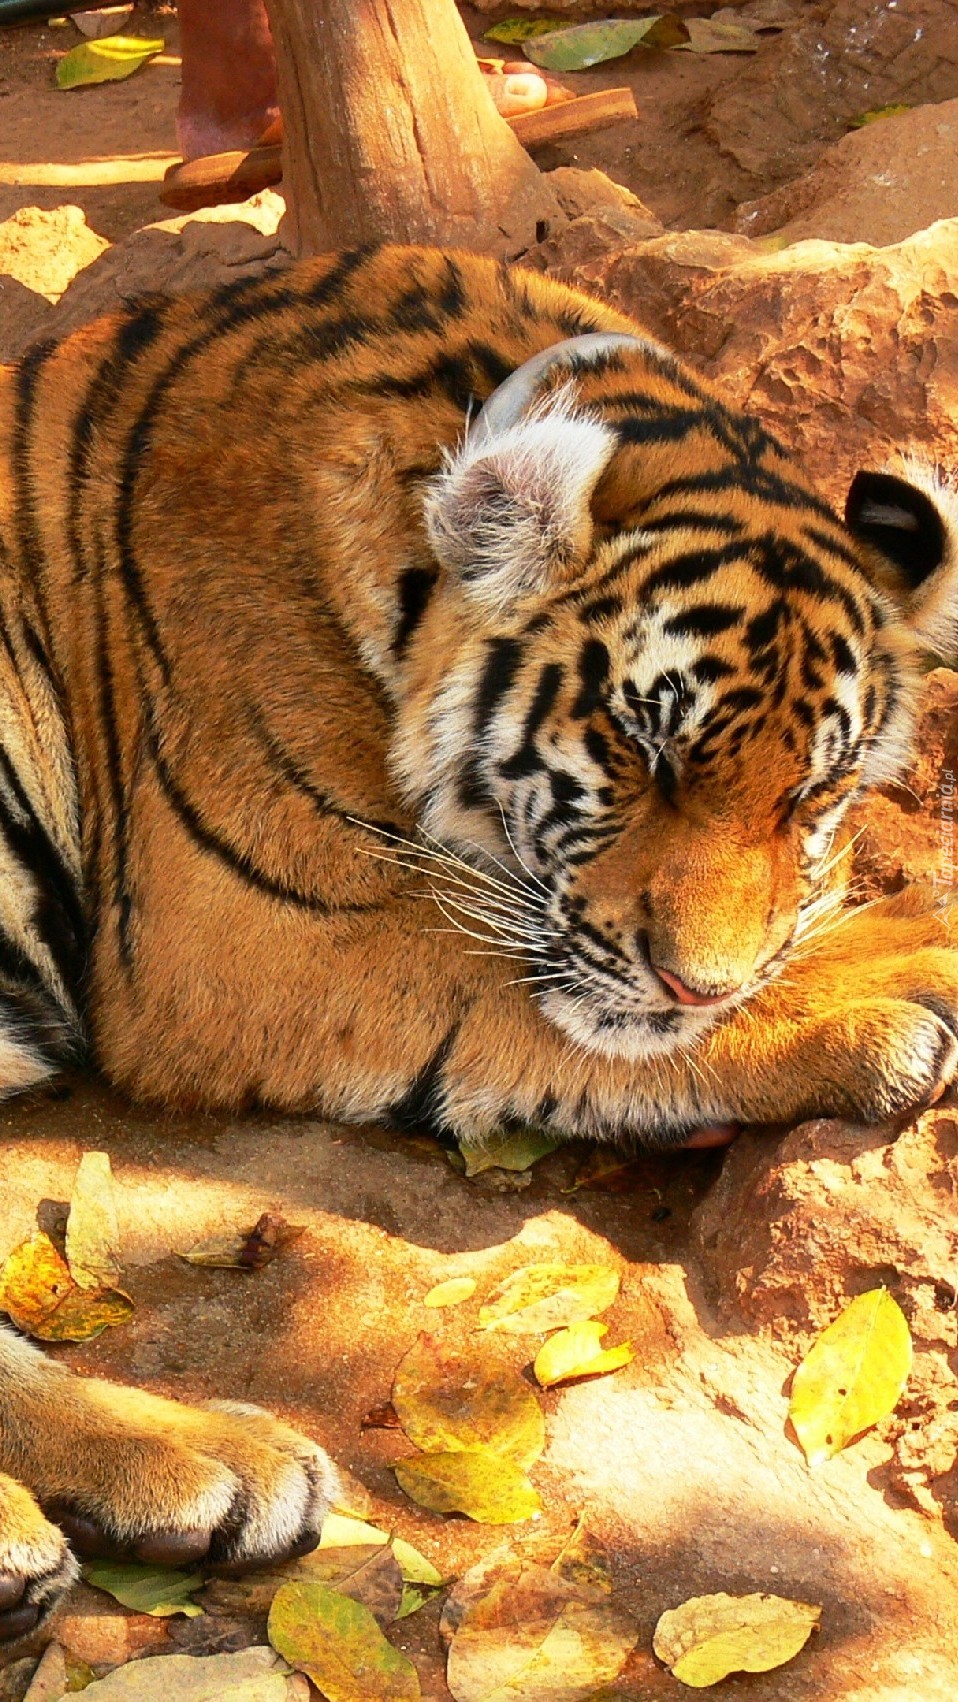 Śpiący tygrys